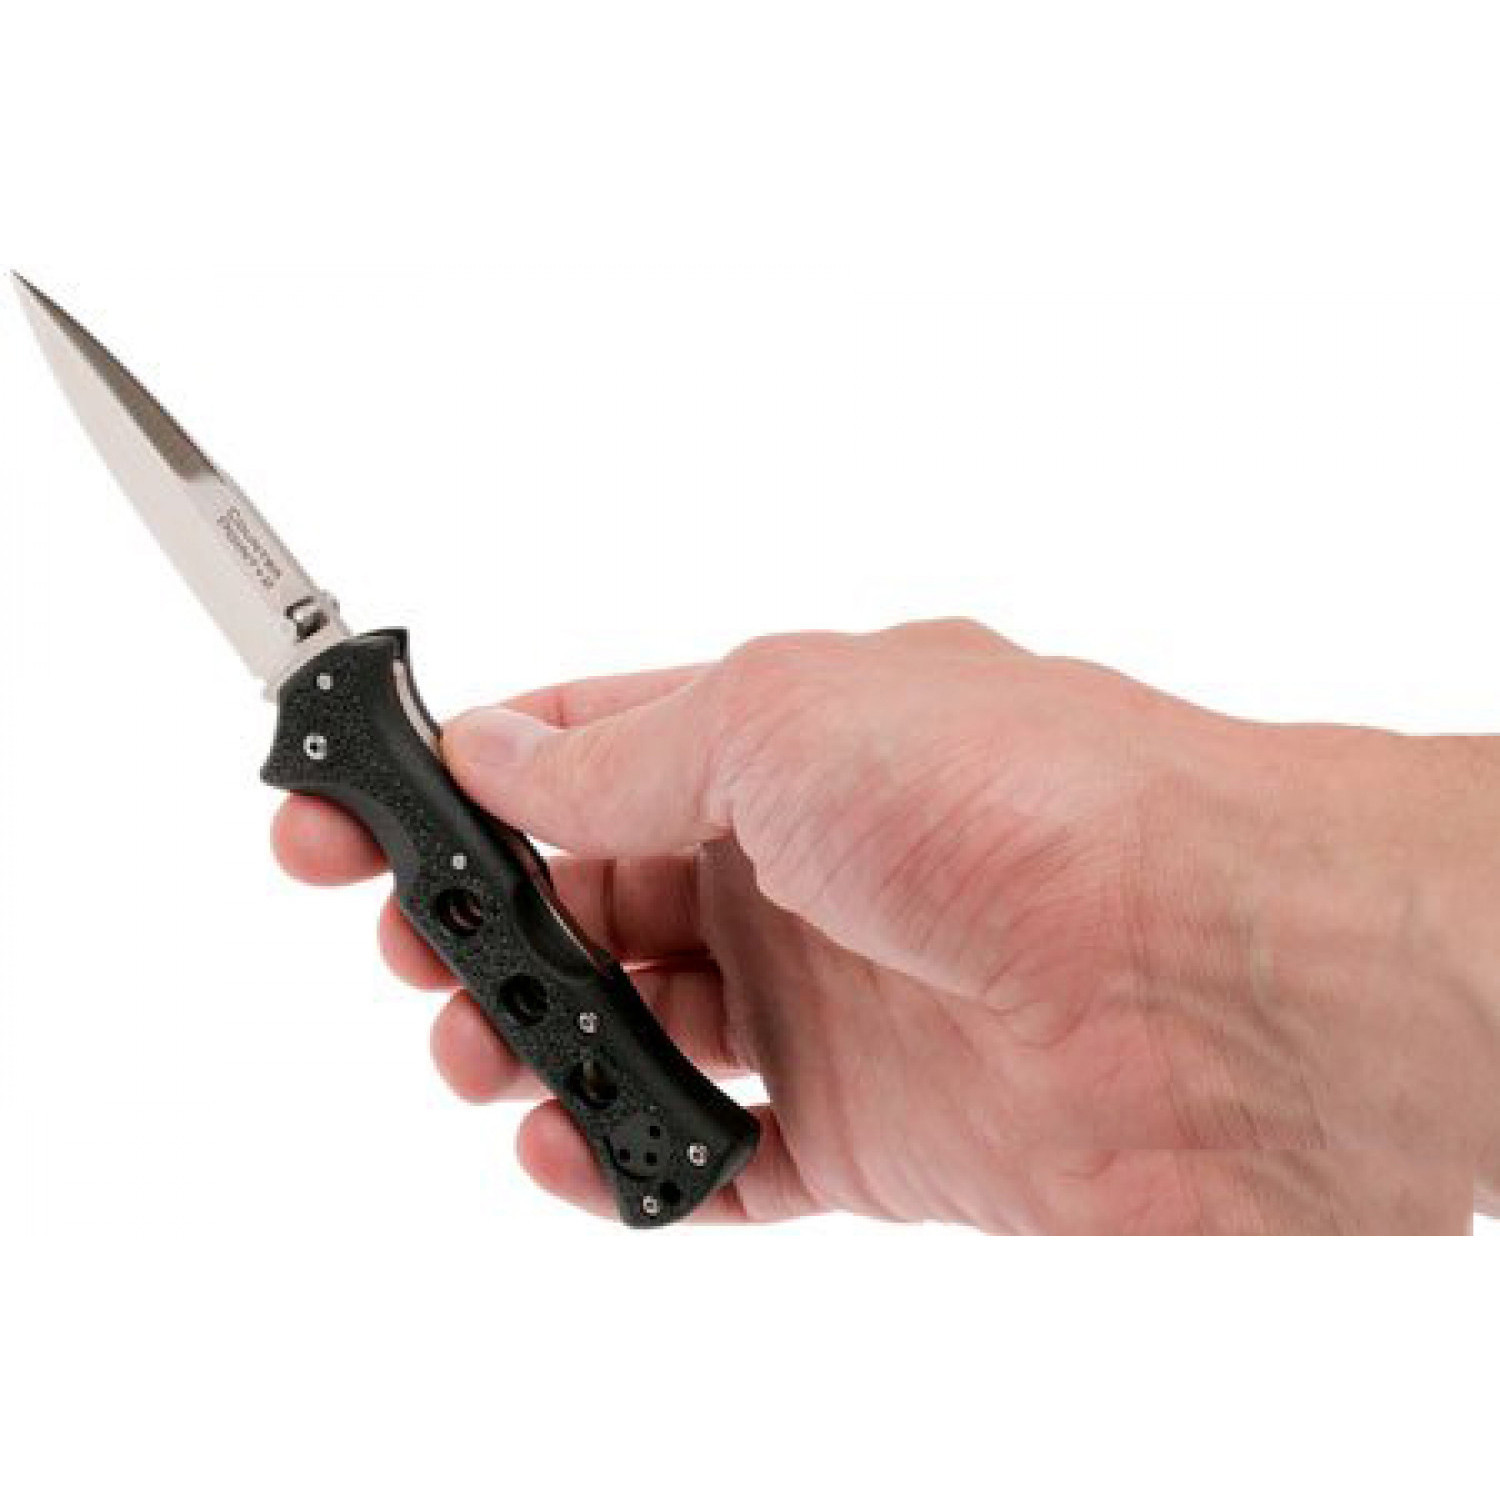 Складной нож Counter Point II - Cold Steel 10ACNC, сталь 440C, рукоять Grivory® (высококачественный полимер) черная - фото 6